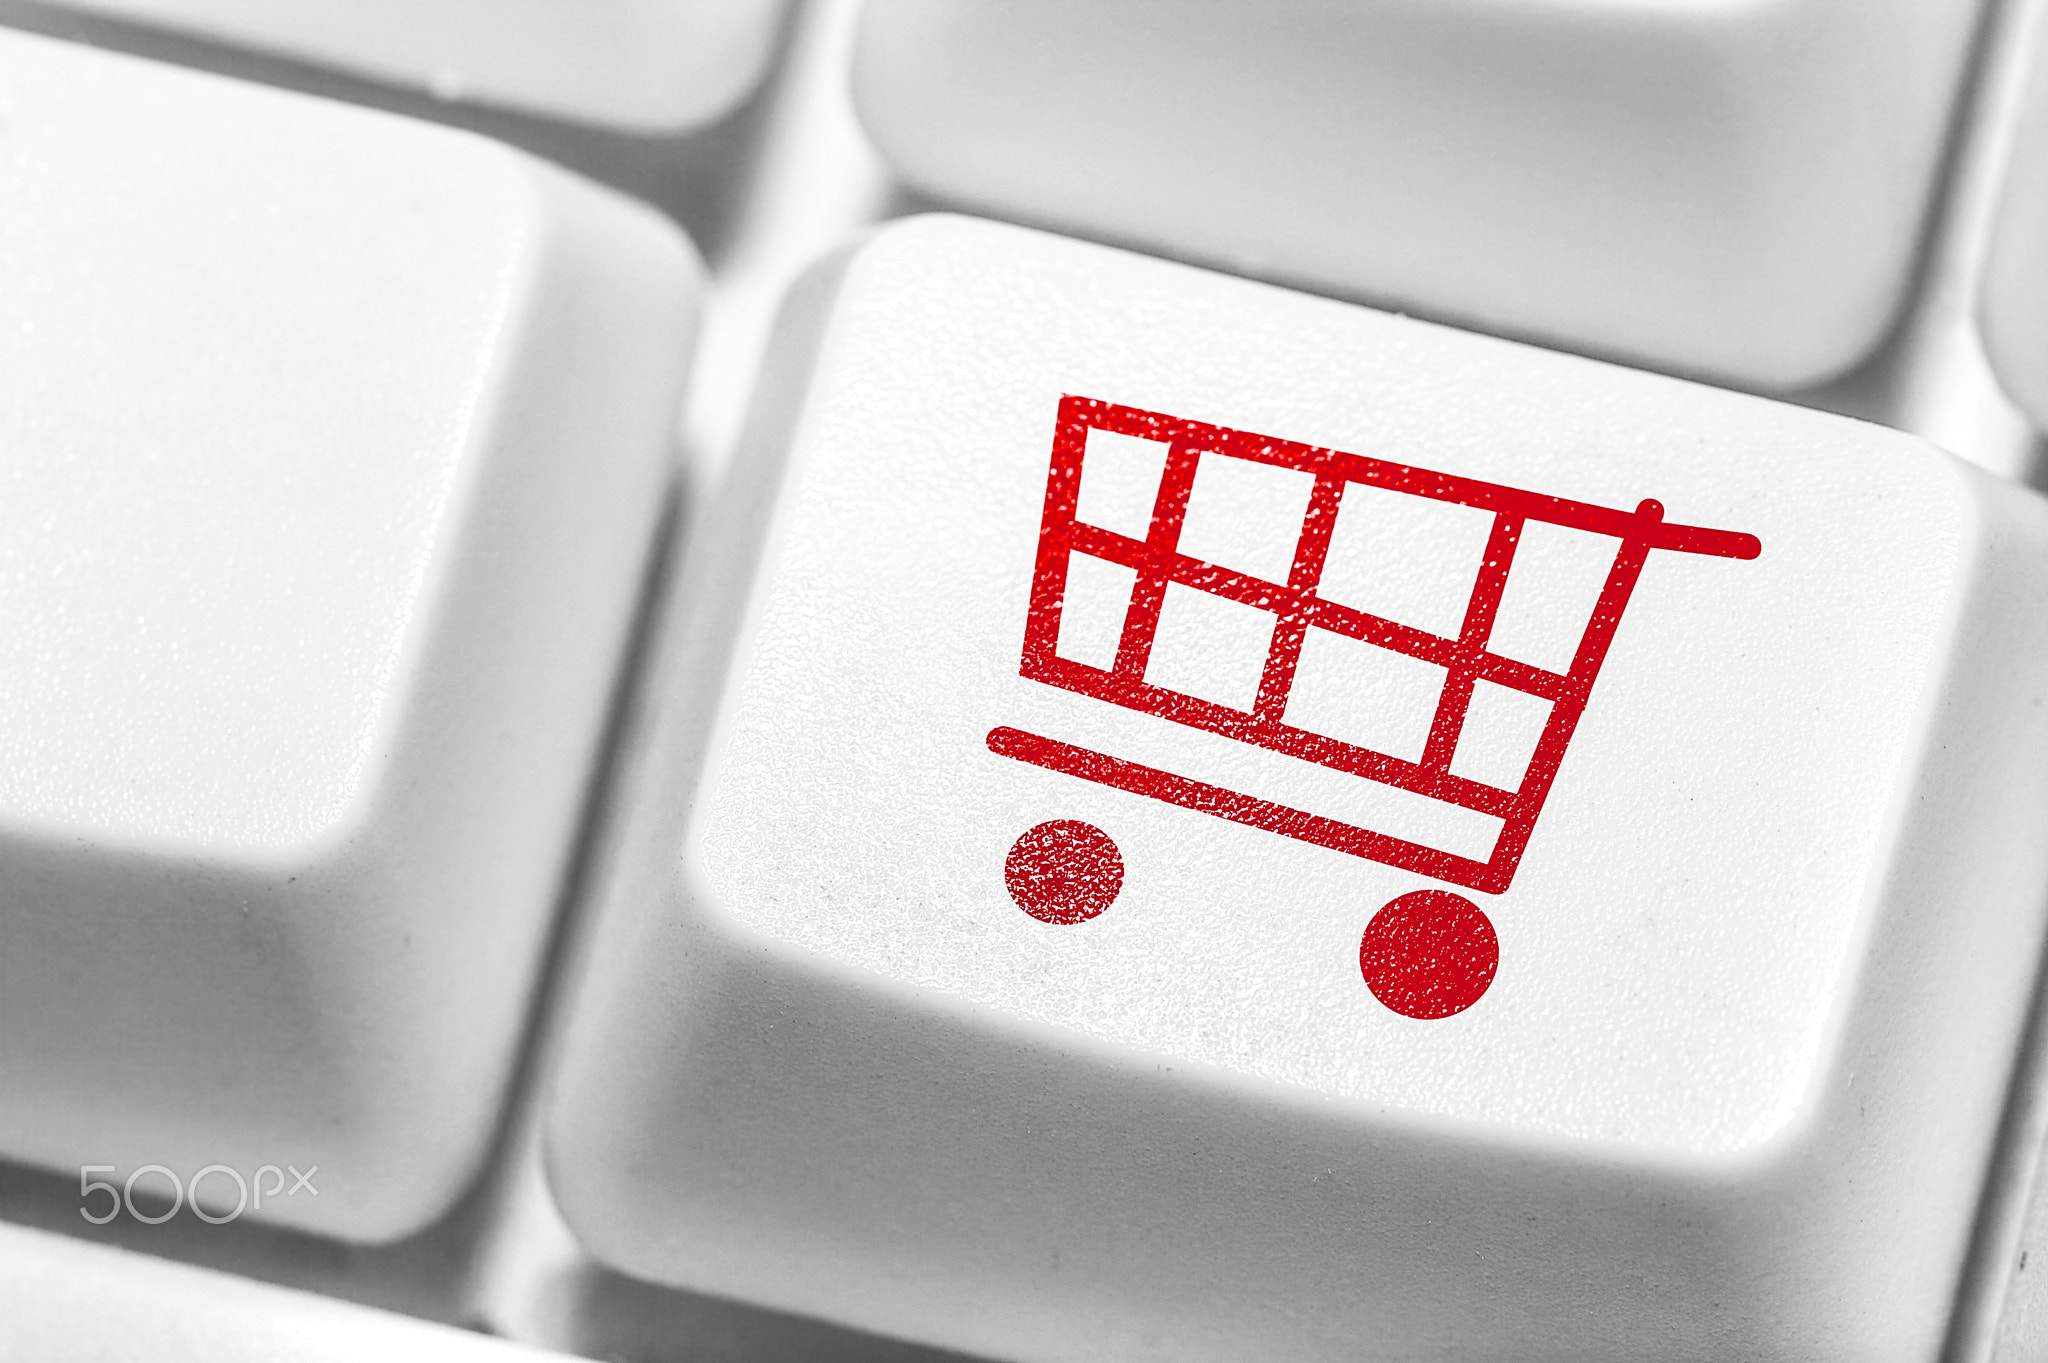 E-commerce, Shopping online.